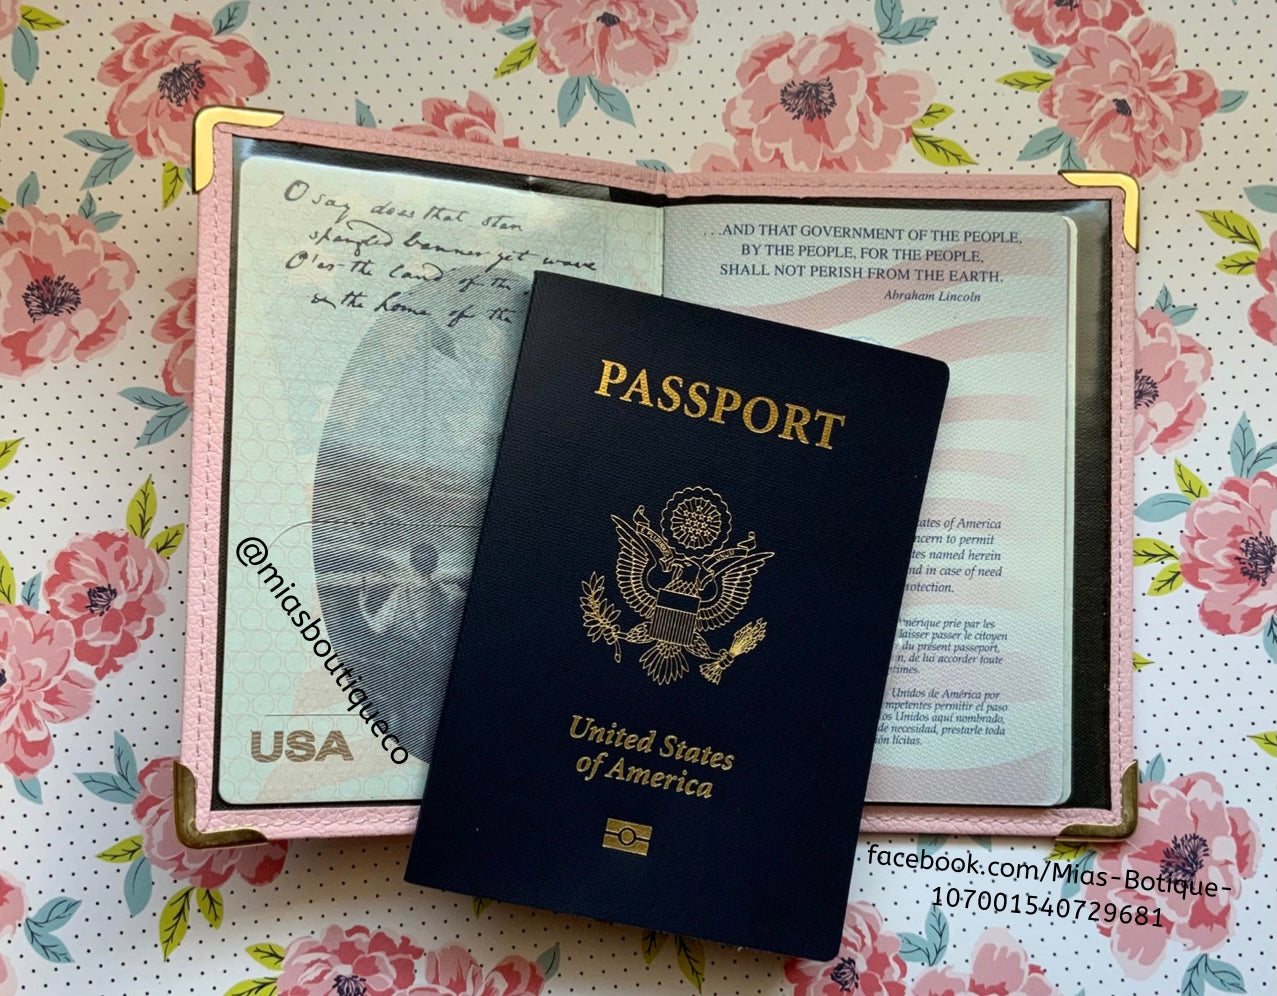 Passport Covers/ Passport Holders / Pink, White, Blue Passport Covers